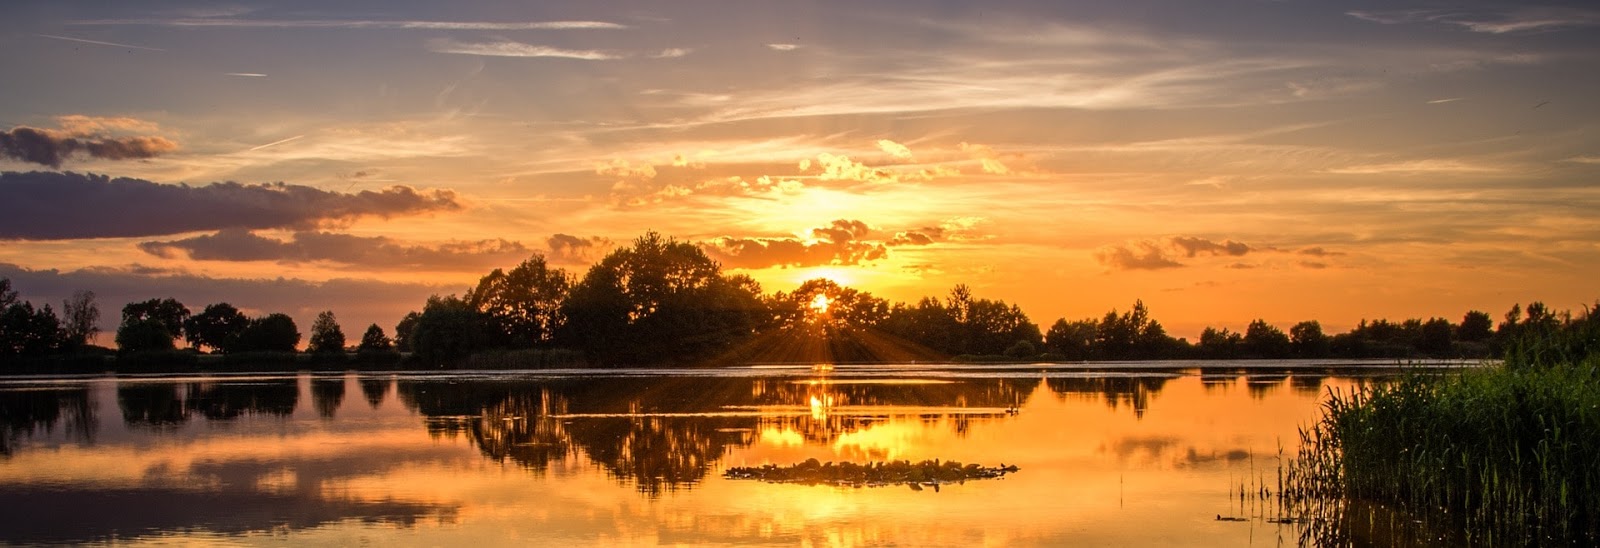 17 Foto  Pemandangan  Sunset Terindah Di Dunia Gambar  Kitan